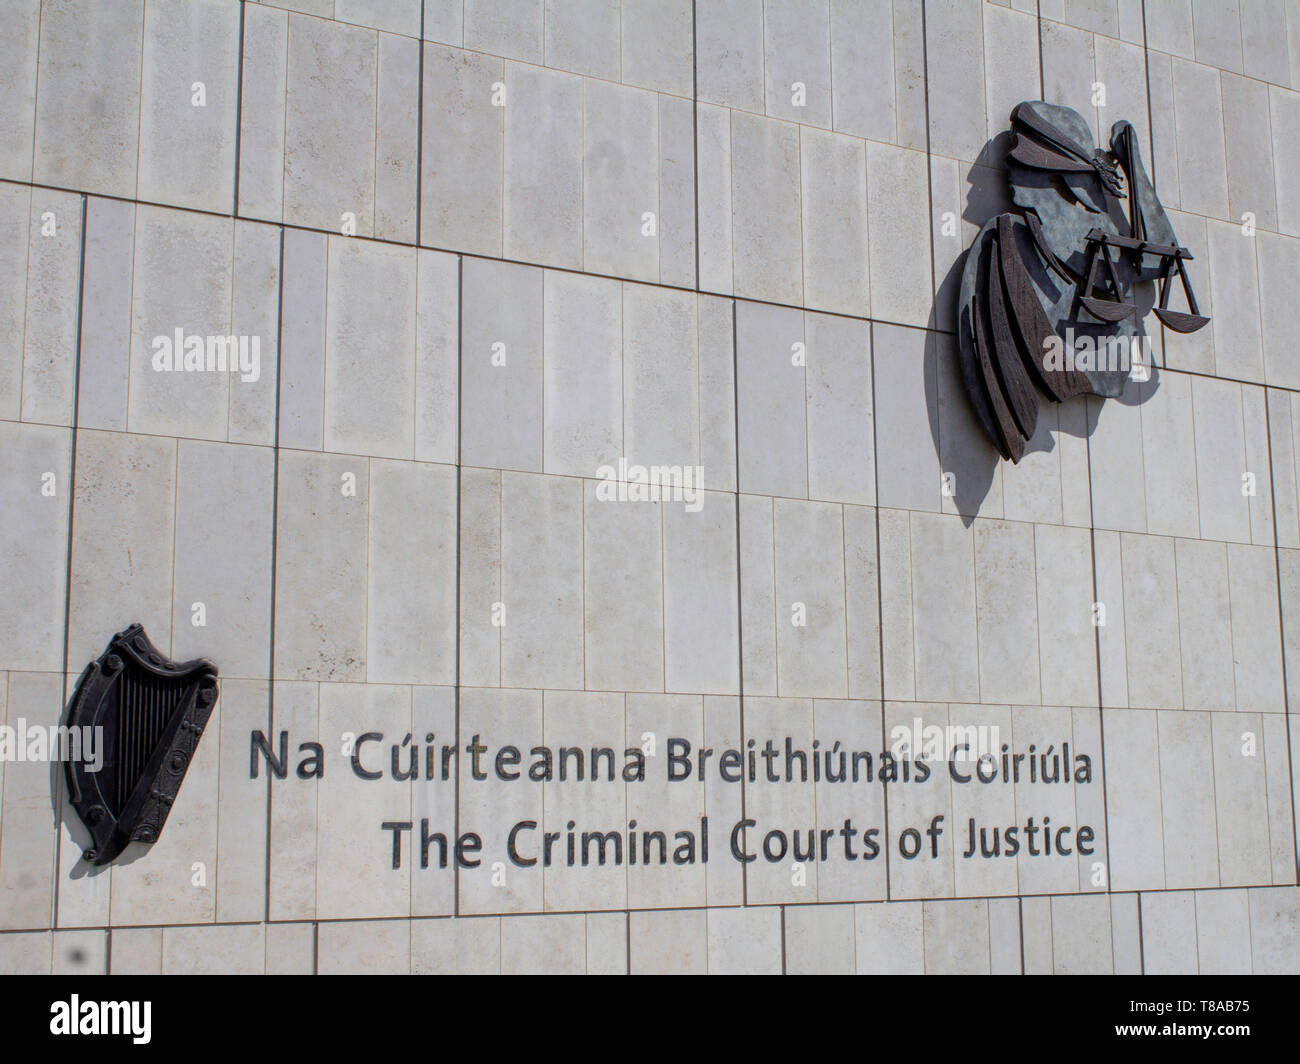 Les cours criminelles de justice, rue Parkgate. Ouvert en 2010, il est le principal tribunal pénal d'Irlande. Banque D'Images